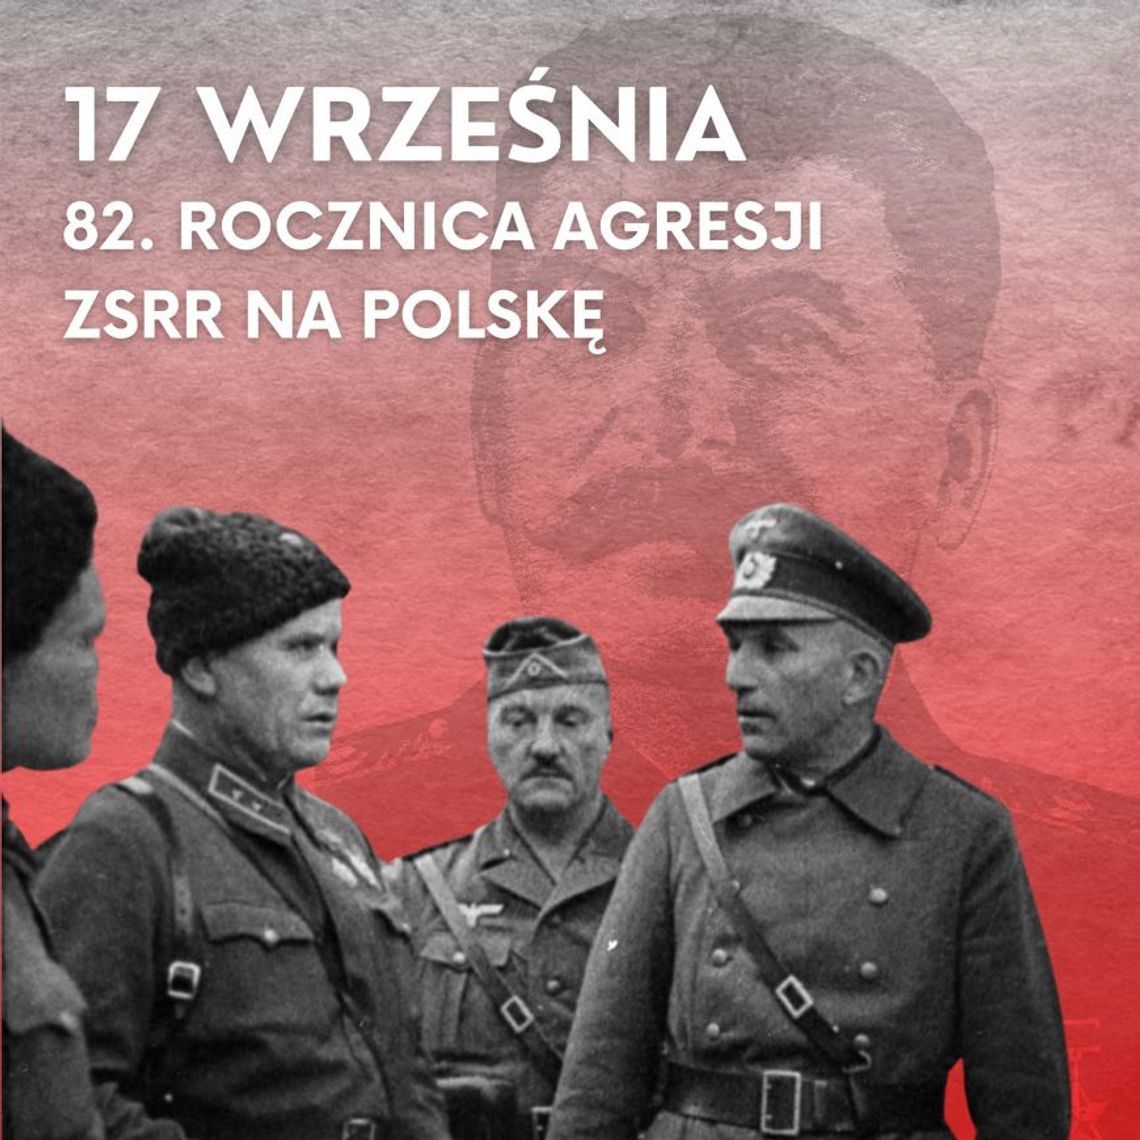 82. rocznica agresji sowieckiej na Polskę 